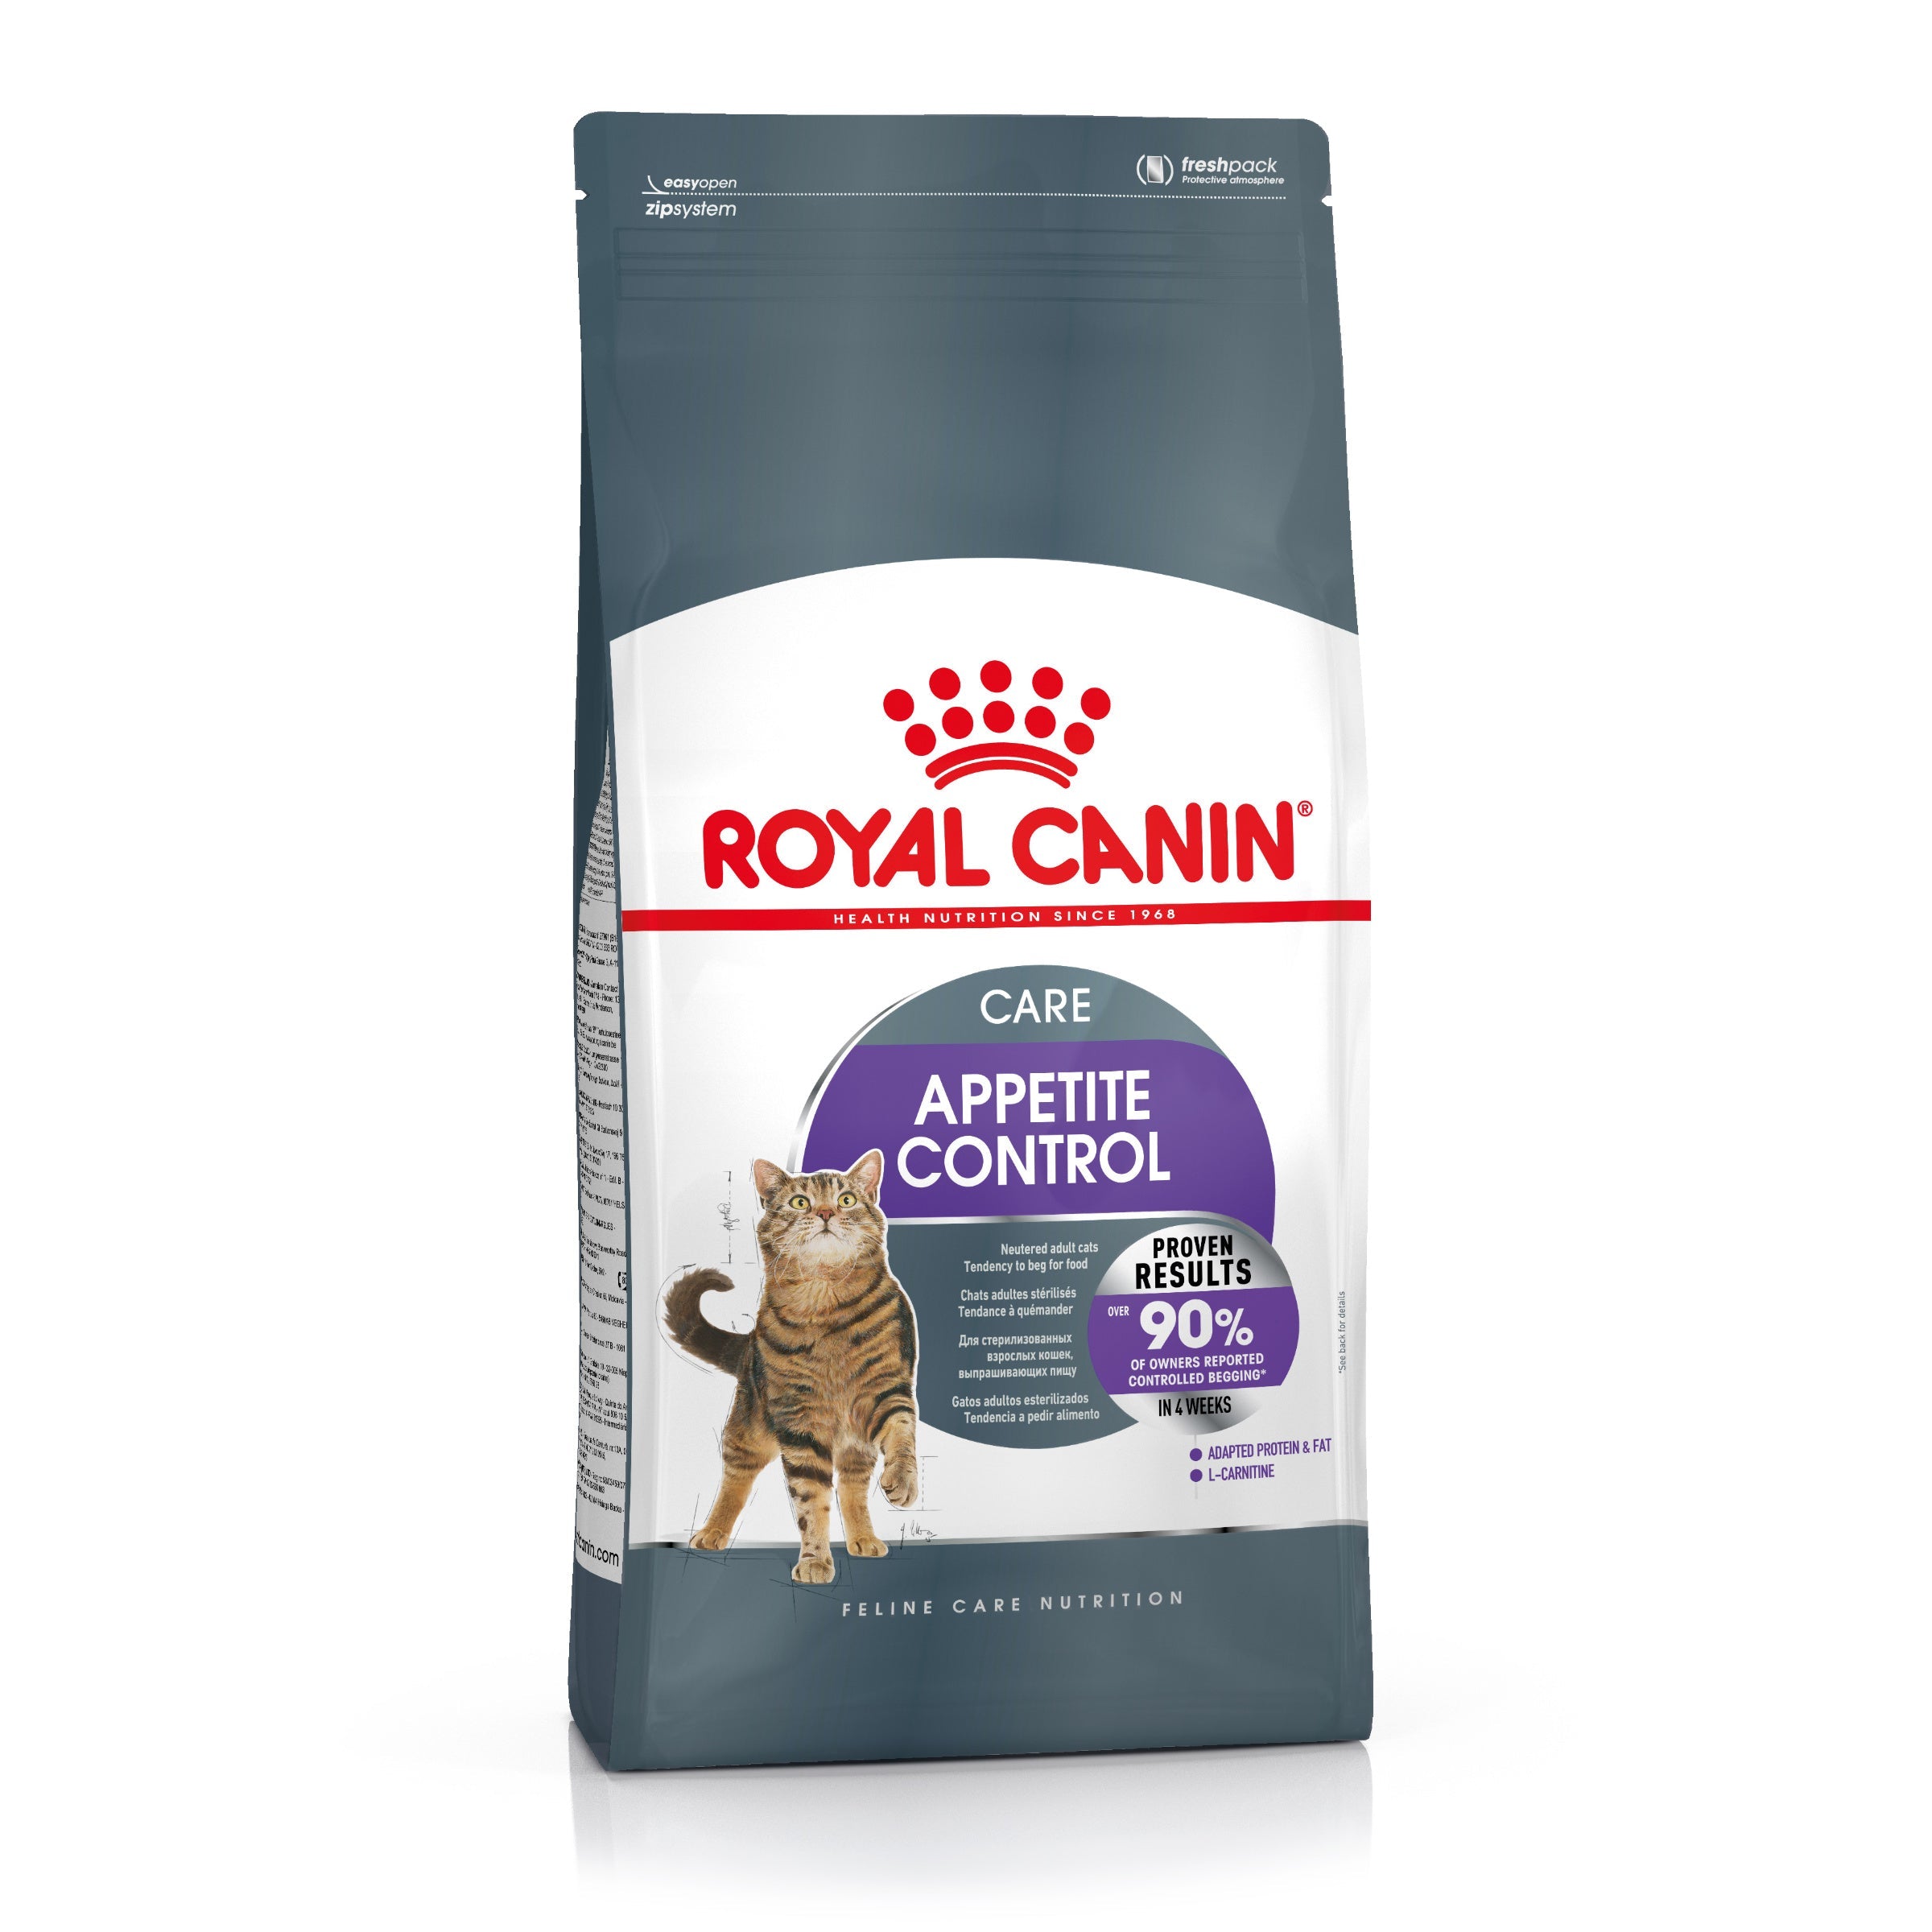 Billede af Royal Canin Appetite Control Care Adult Tørfoder til kat 400g